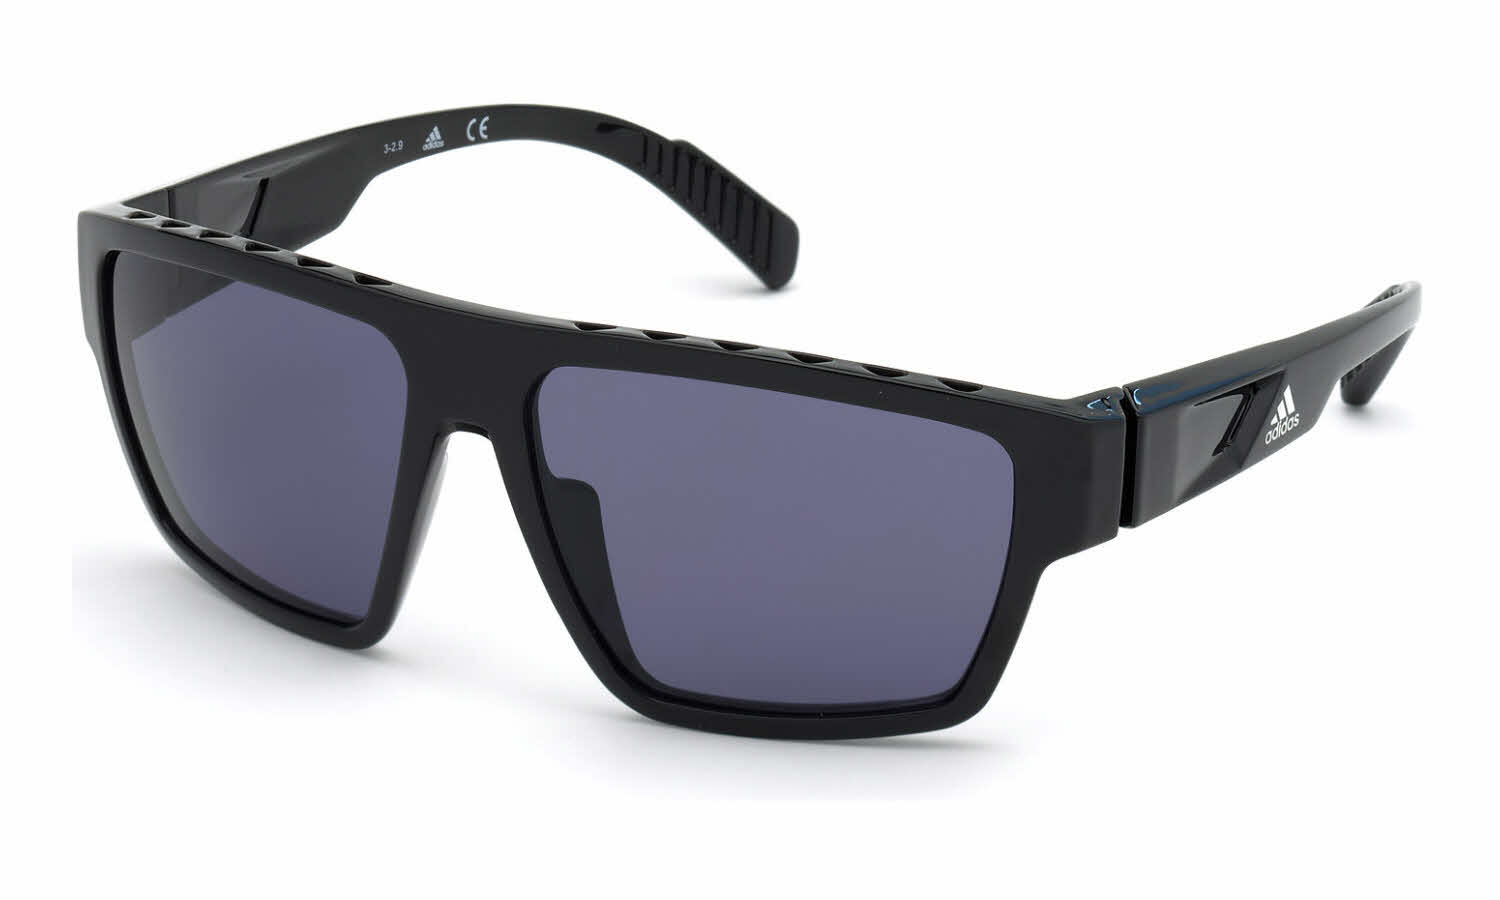 Adidas SP0008 Sunglasses | FramesDirect.com